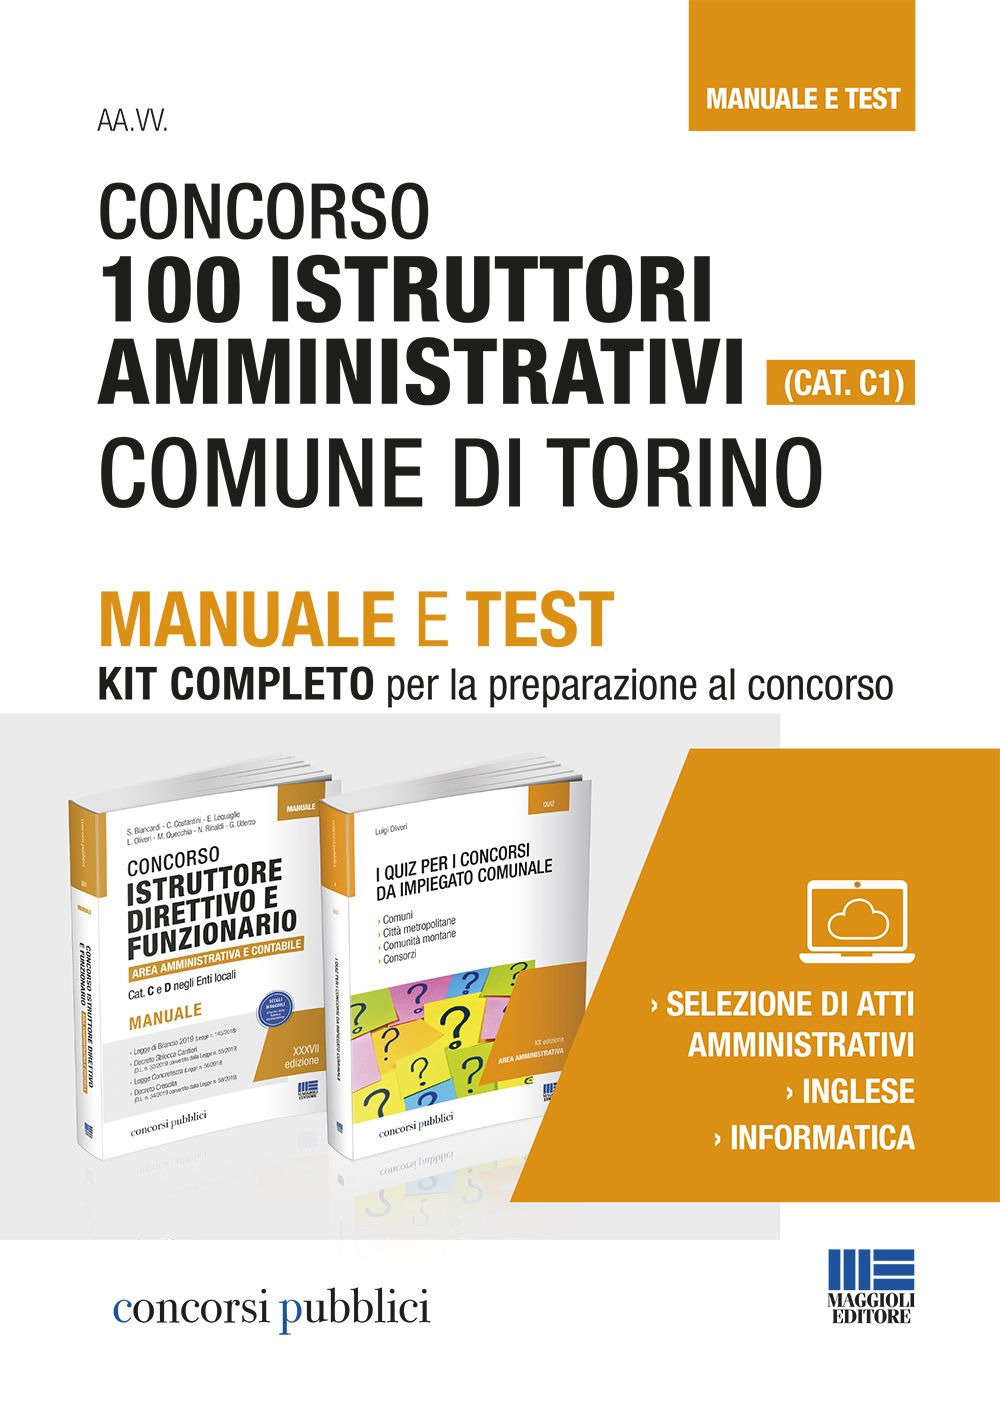 Concorso 100 istruttori amministrativi (Cat. C1). Comune di Torino. Manuale e test. Kit completo per la preparazione al concorso